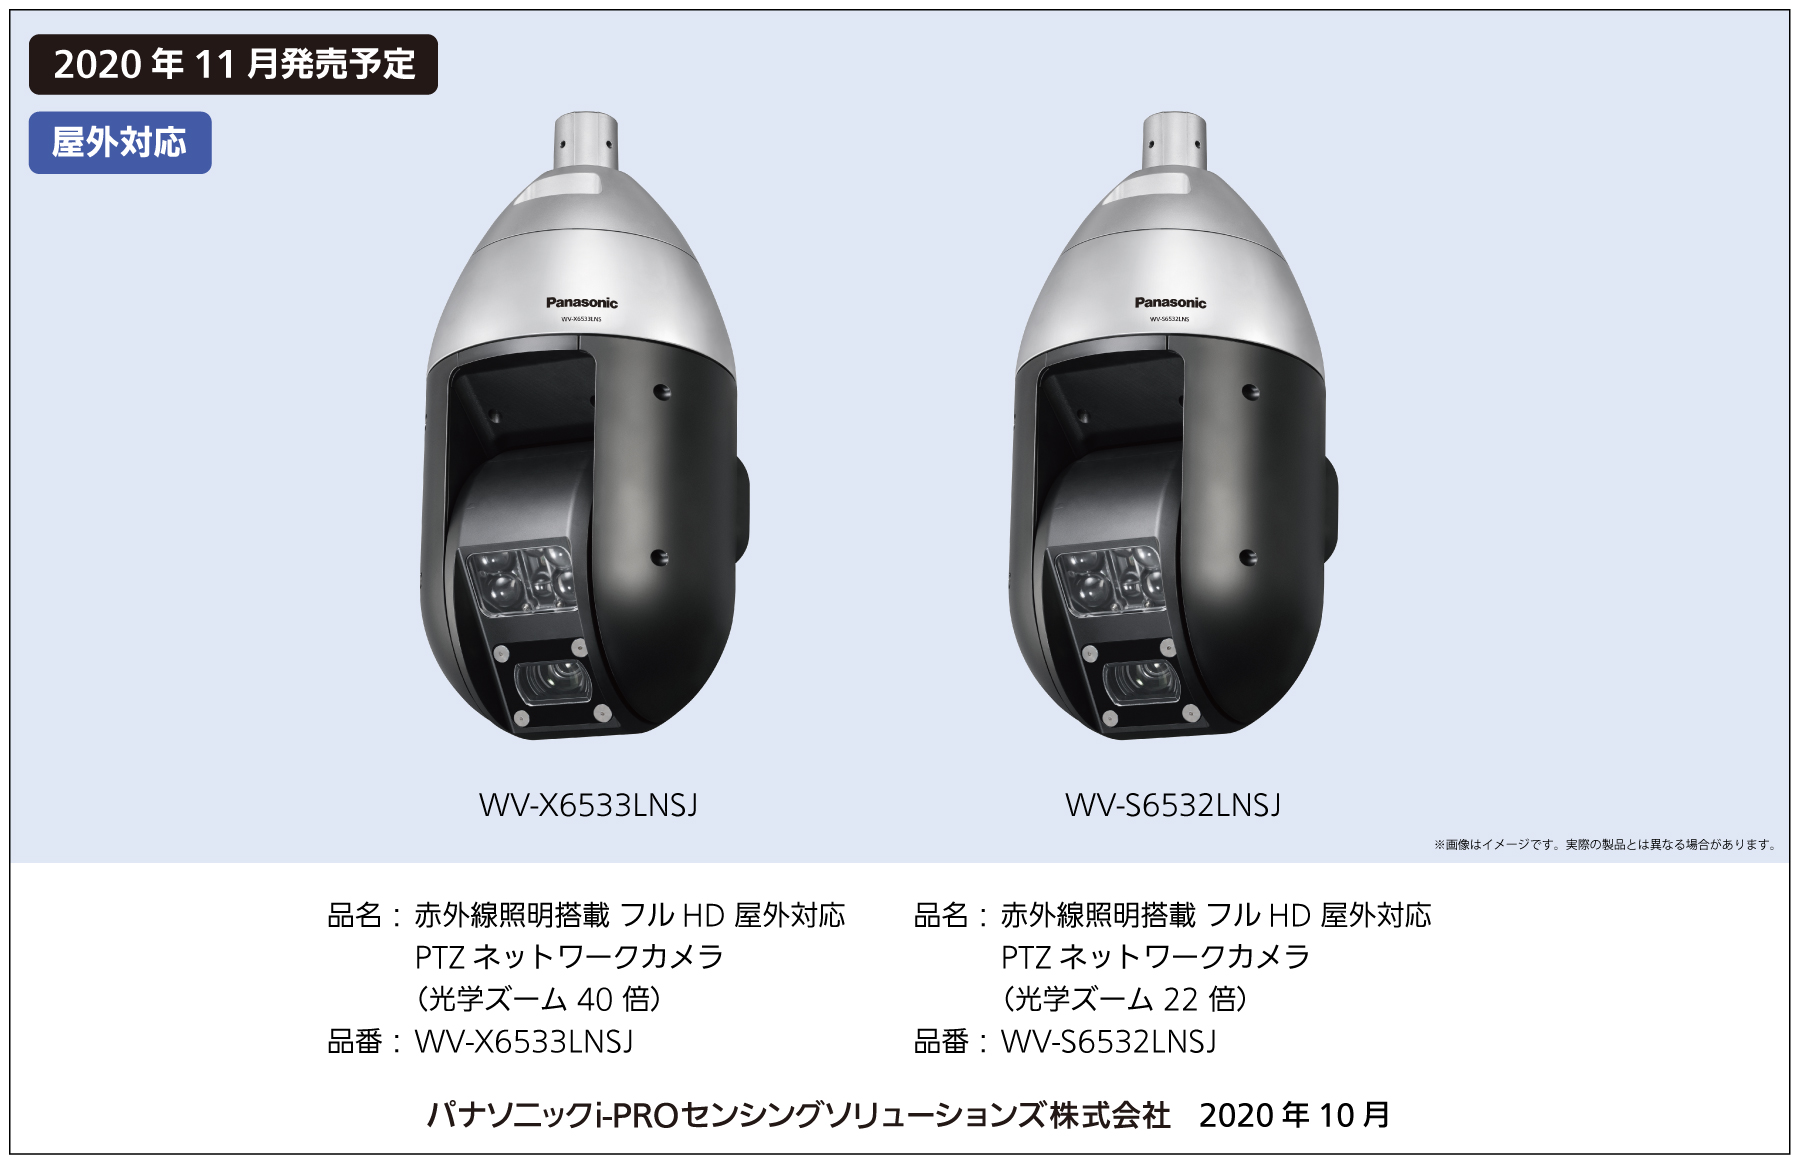 耐重塩害仕様の赤外線照明搭載PTZネットワークカメラ 2機種を発売 